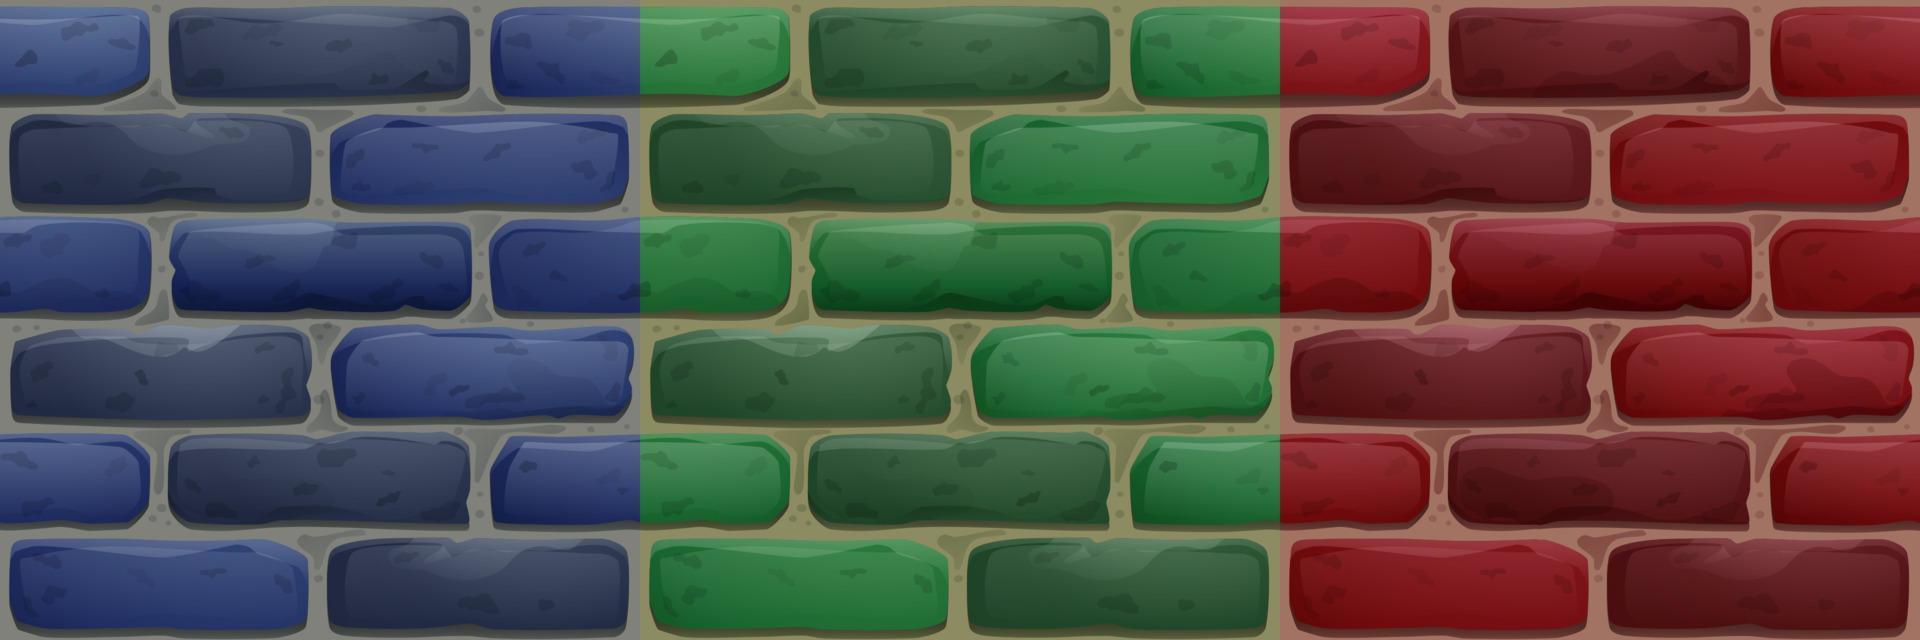 steen muur, huis facade structuur voor spel vector